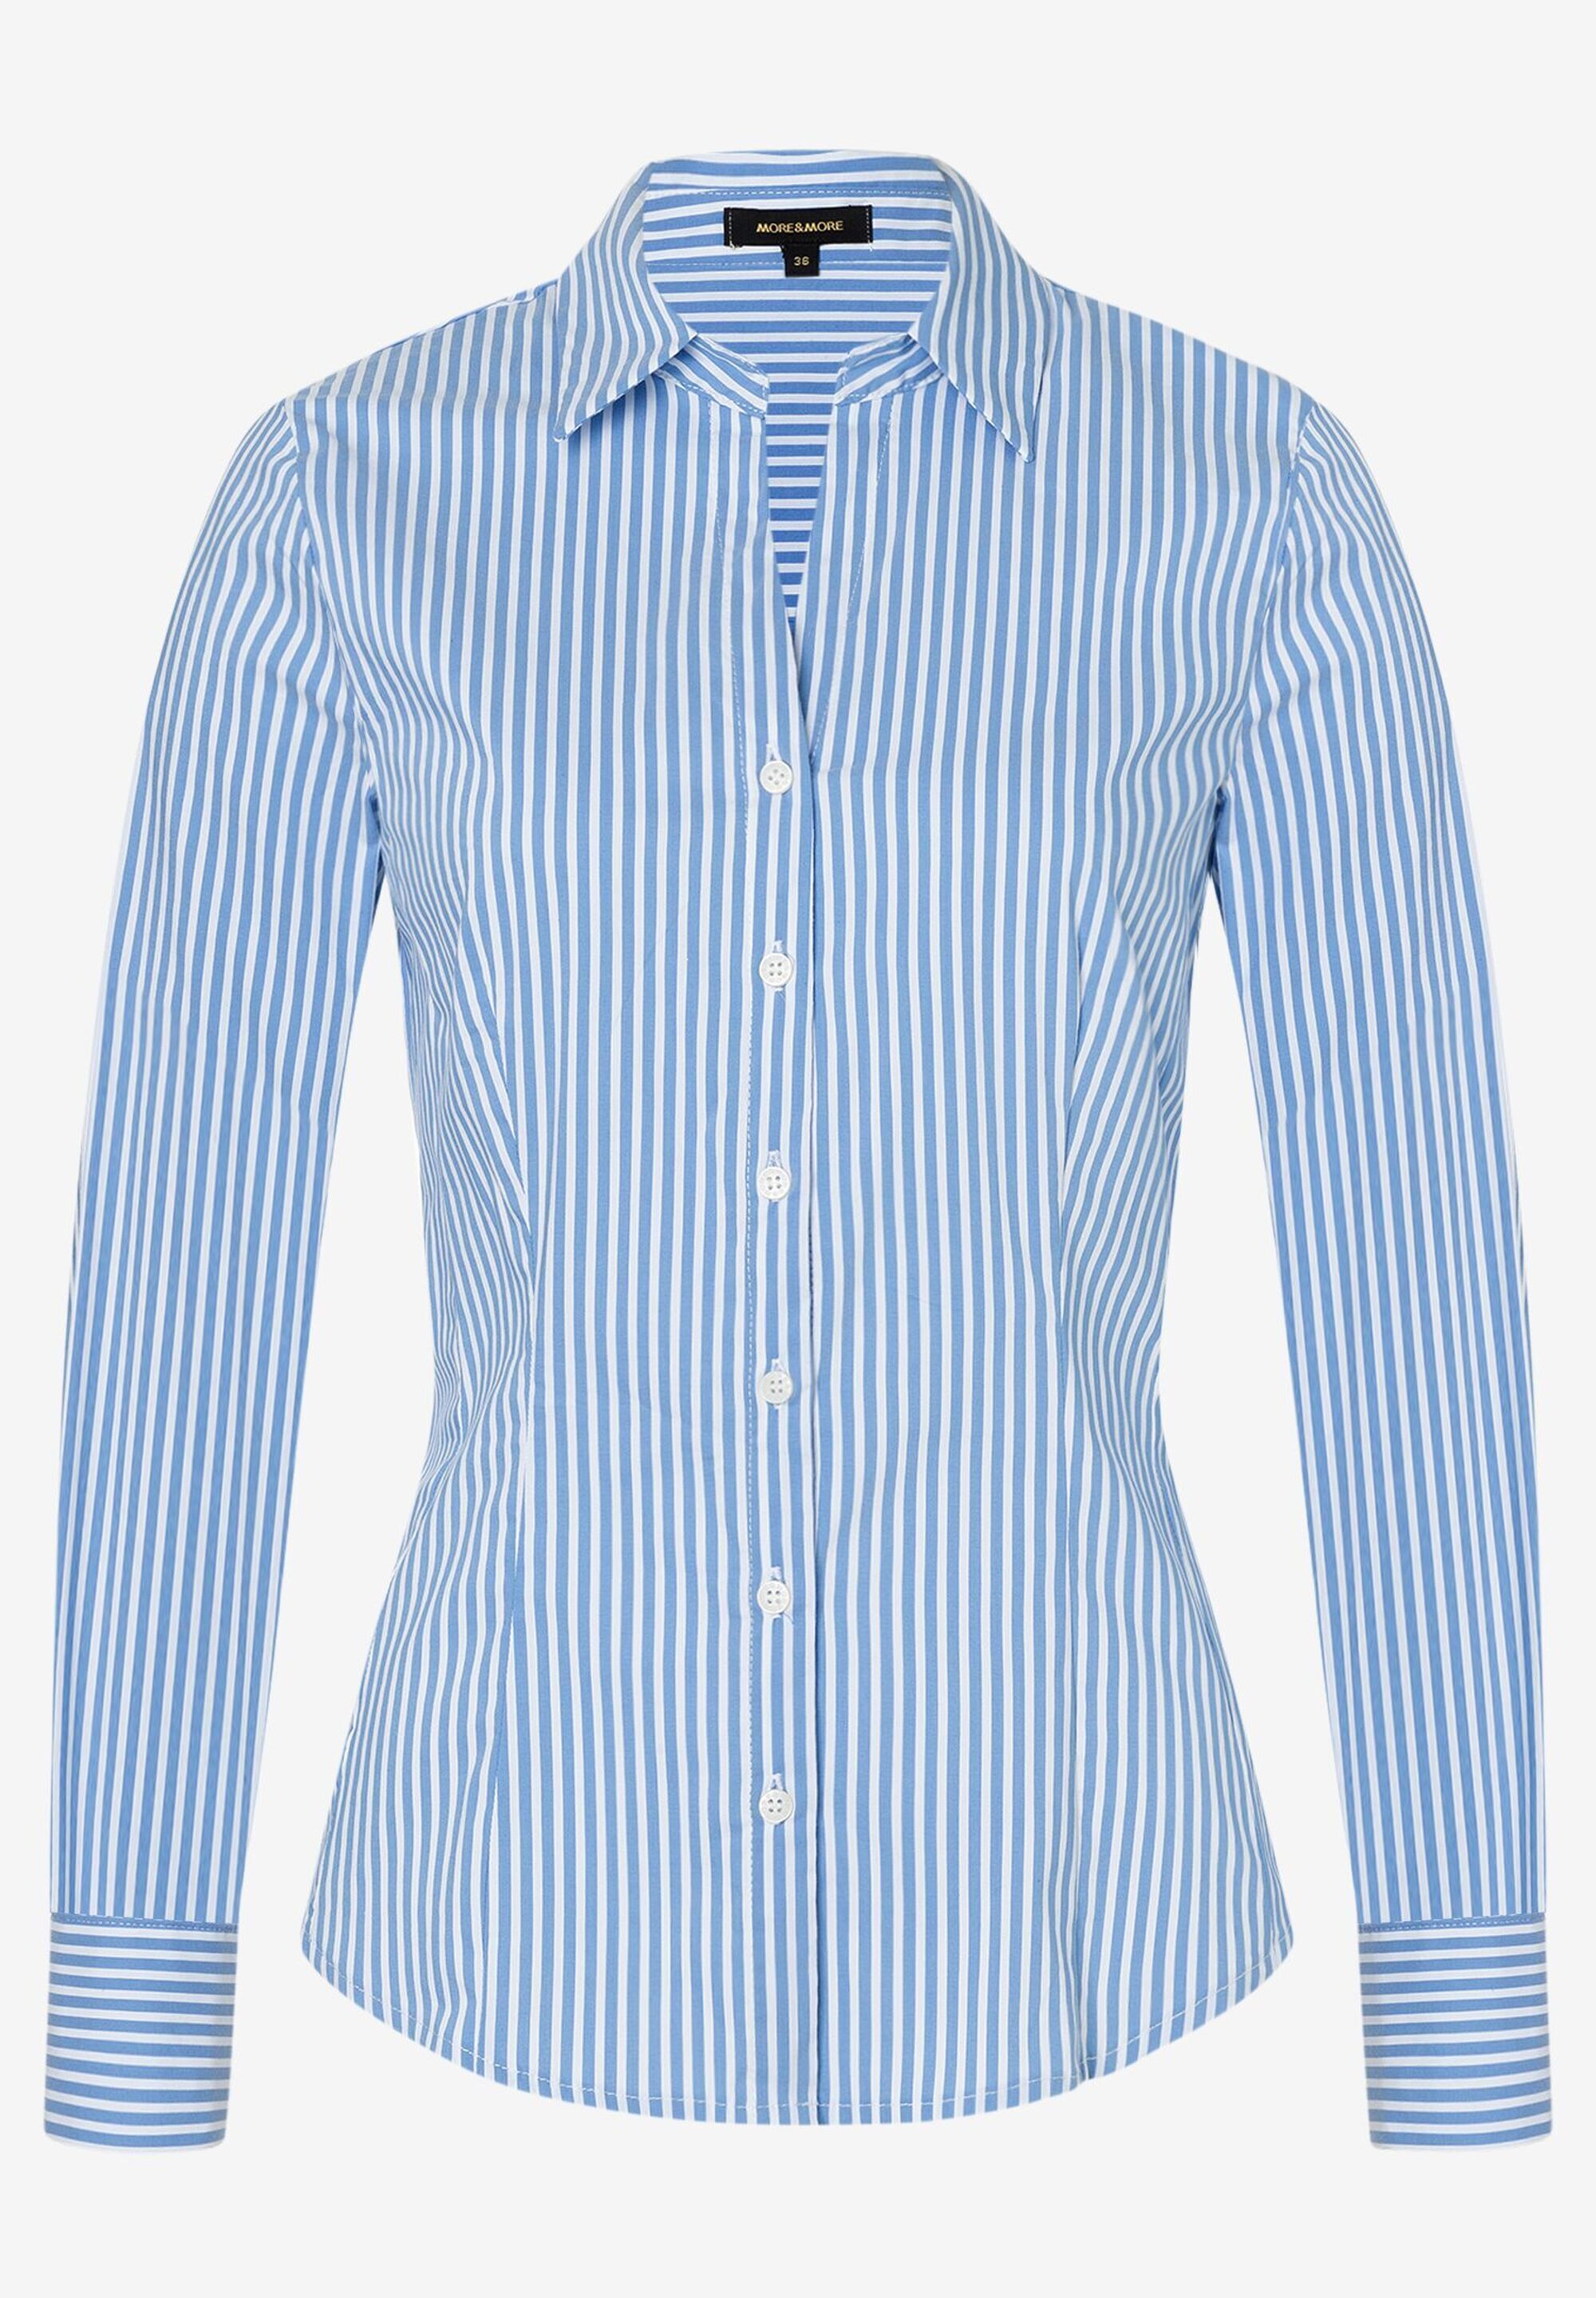 Hemdbluse mit Streifen, blau/weiß, Frühjahrs-Kollektion | Der offizielle  MORE & MORE Onlineshop | Hemdblusen